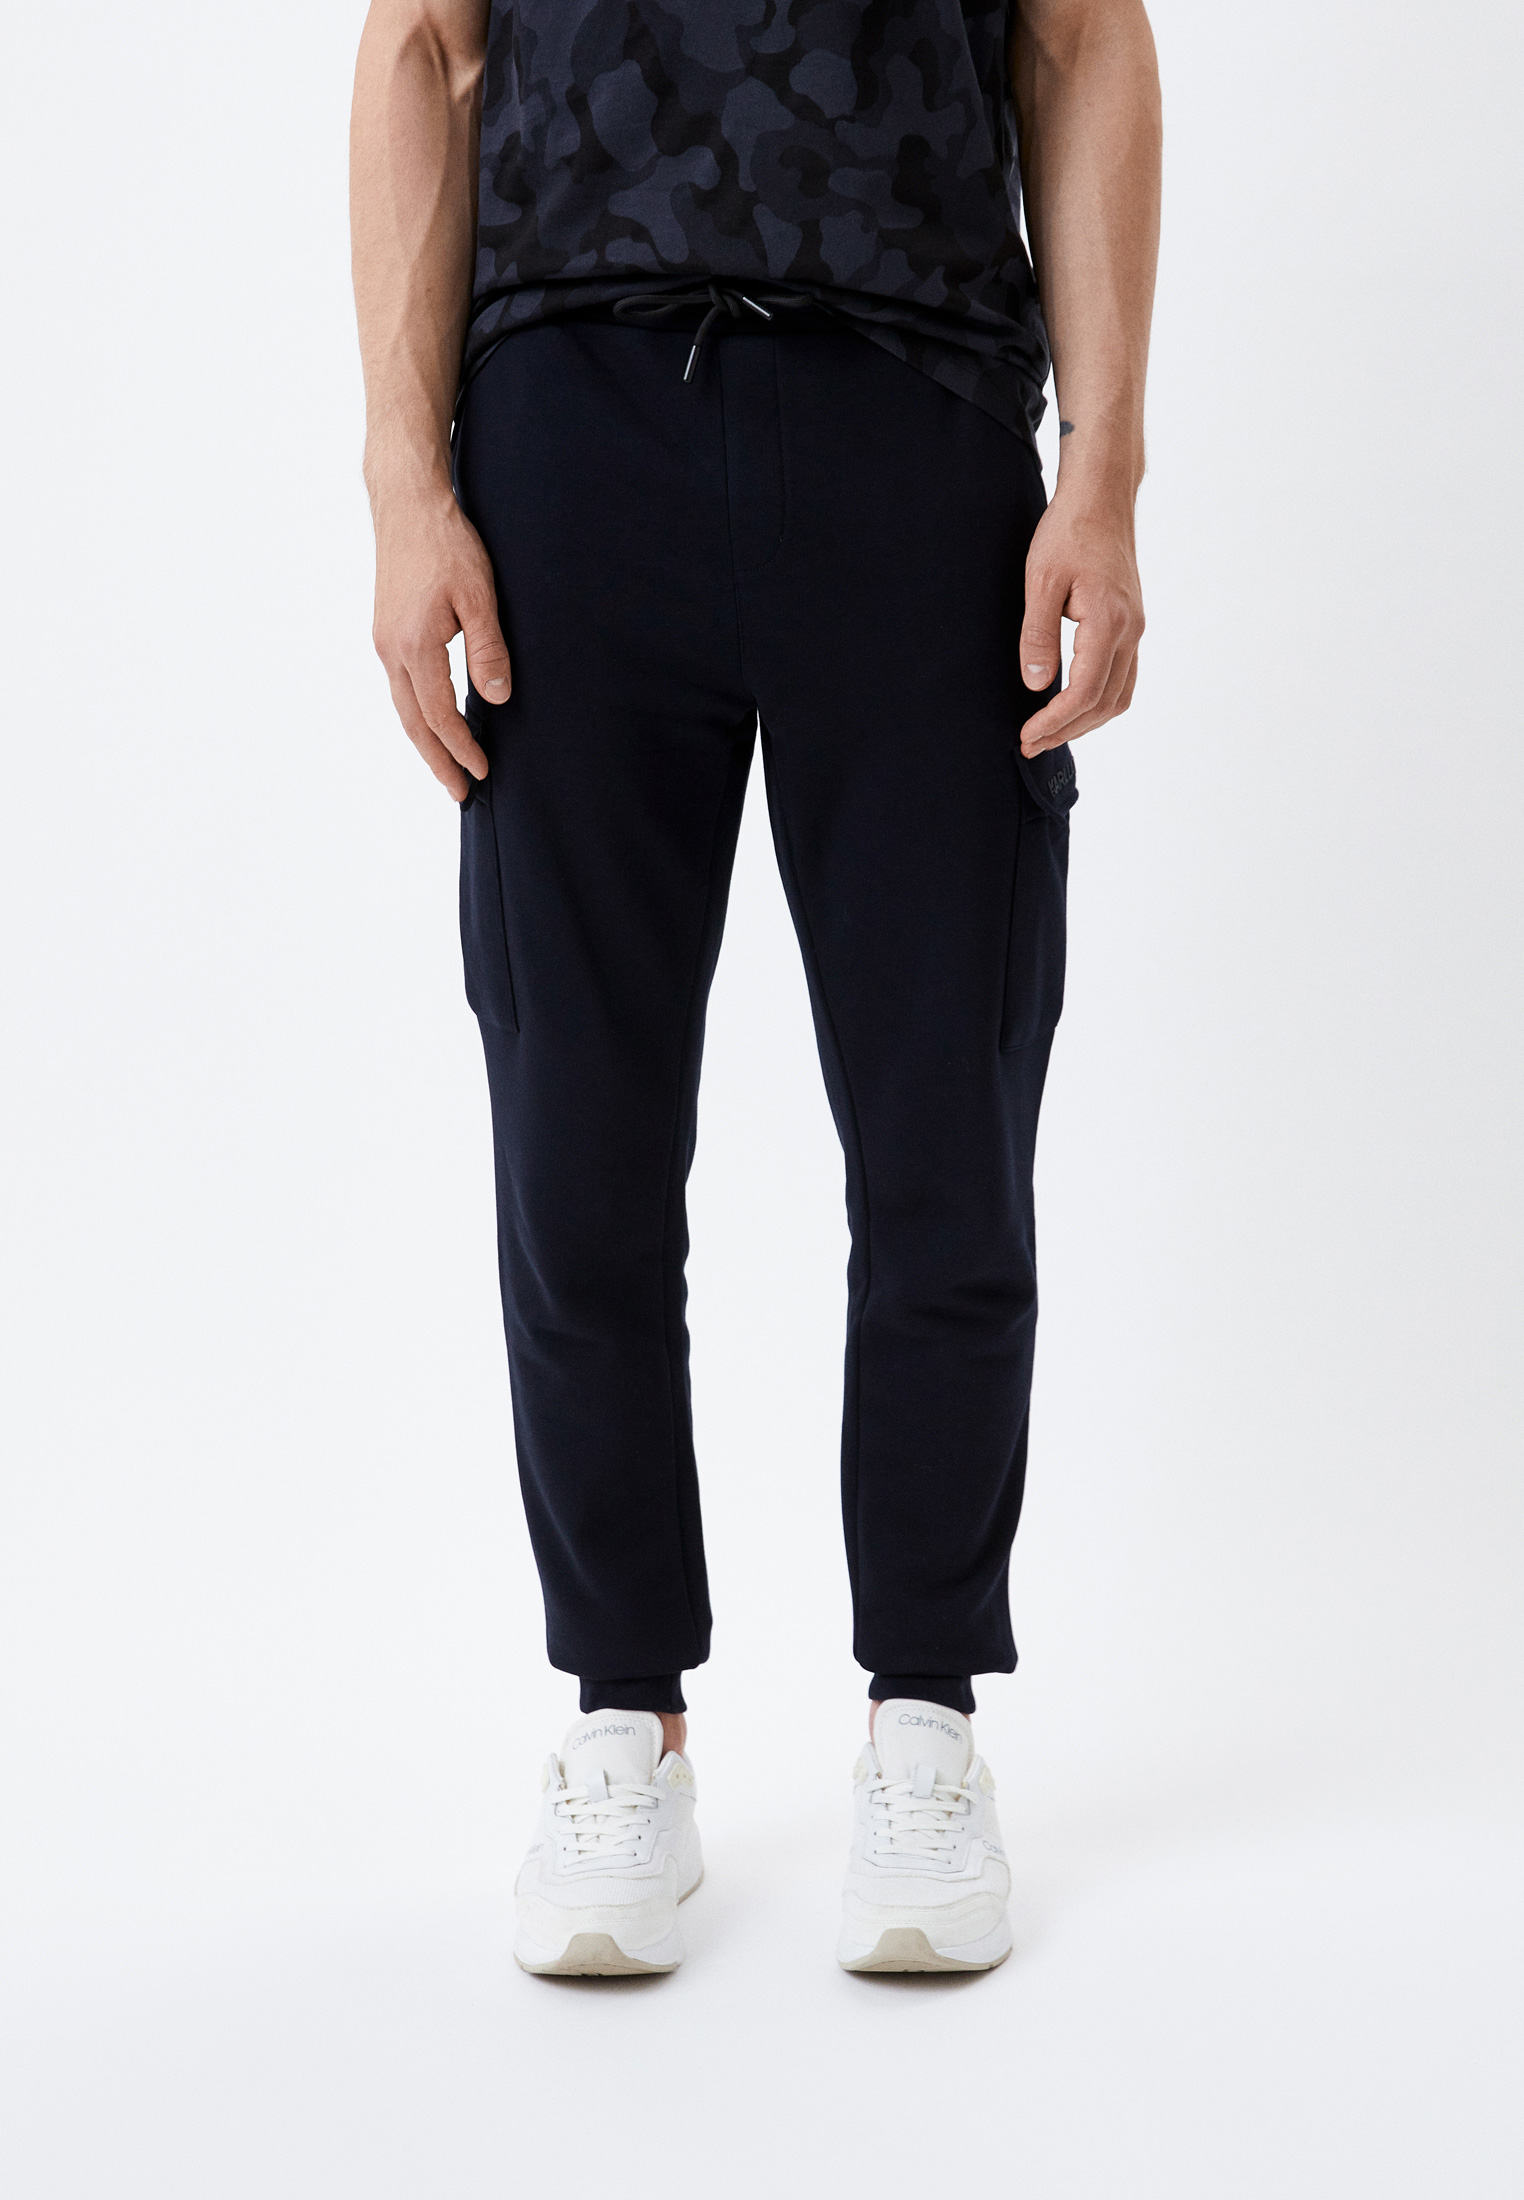 Мужские спортивные брюки Karl Lagerfeld (Карл Лагерфельд) 705087-523910: изображение 1